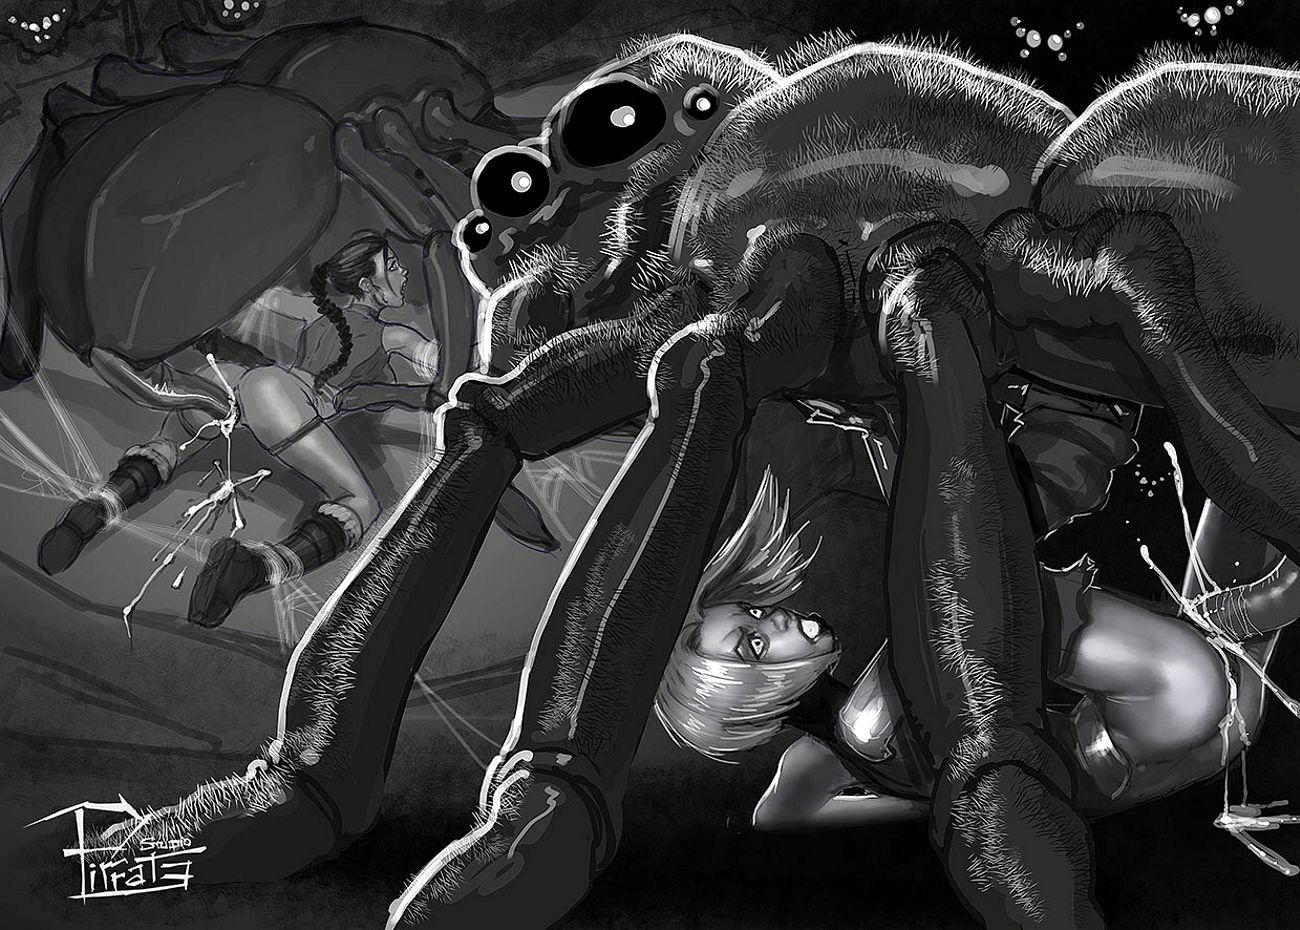 два паука чудовищного размера откладывают яйца в животы голых девушек, засунув свои яйцеклады в их тесные анусы, аниме монстры, секс с монстрами